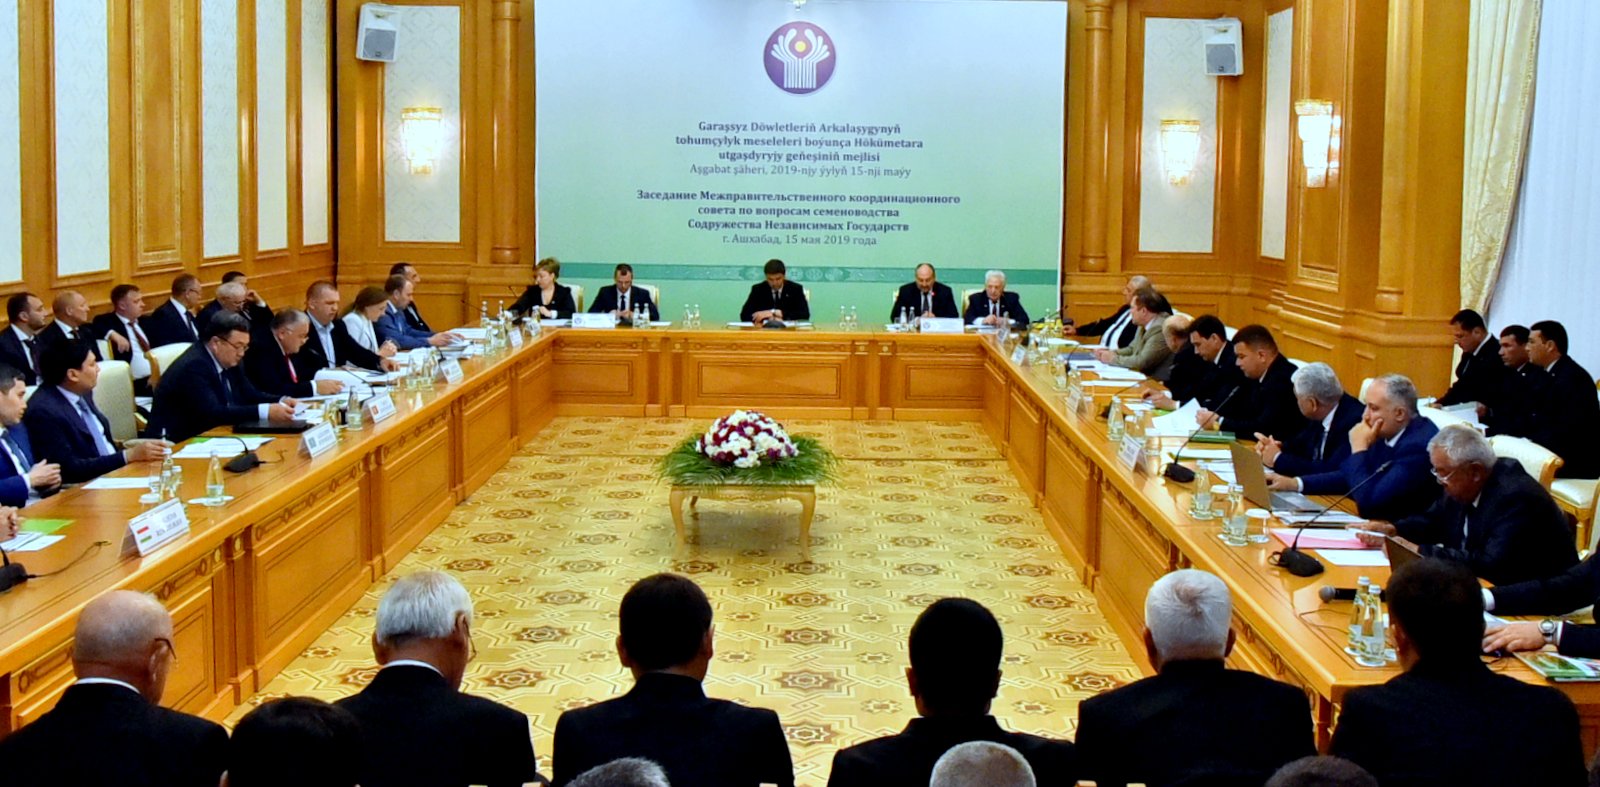 Представитель государства 5 букв. Туркменистан Ашхабад СГП СНГ 2019 заседание. Заседание Координационного совета по санитарной охране стран СНГ. Туркмении подпишет межправительственное соглашение в газовой сфере.